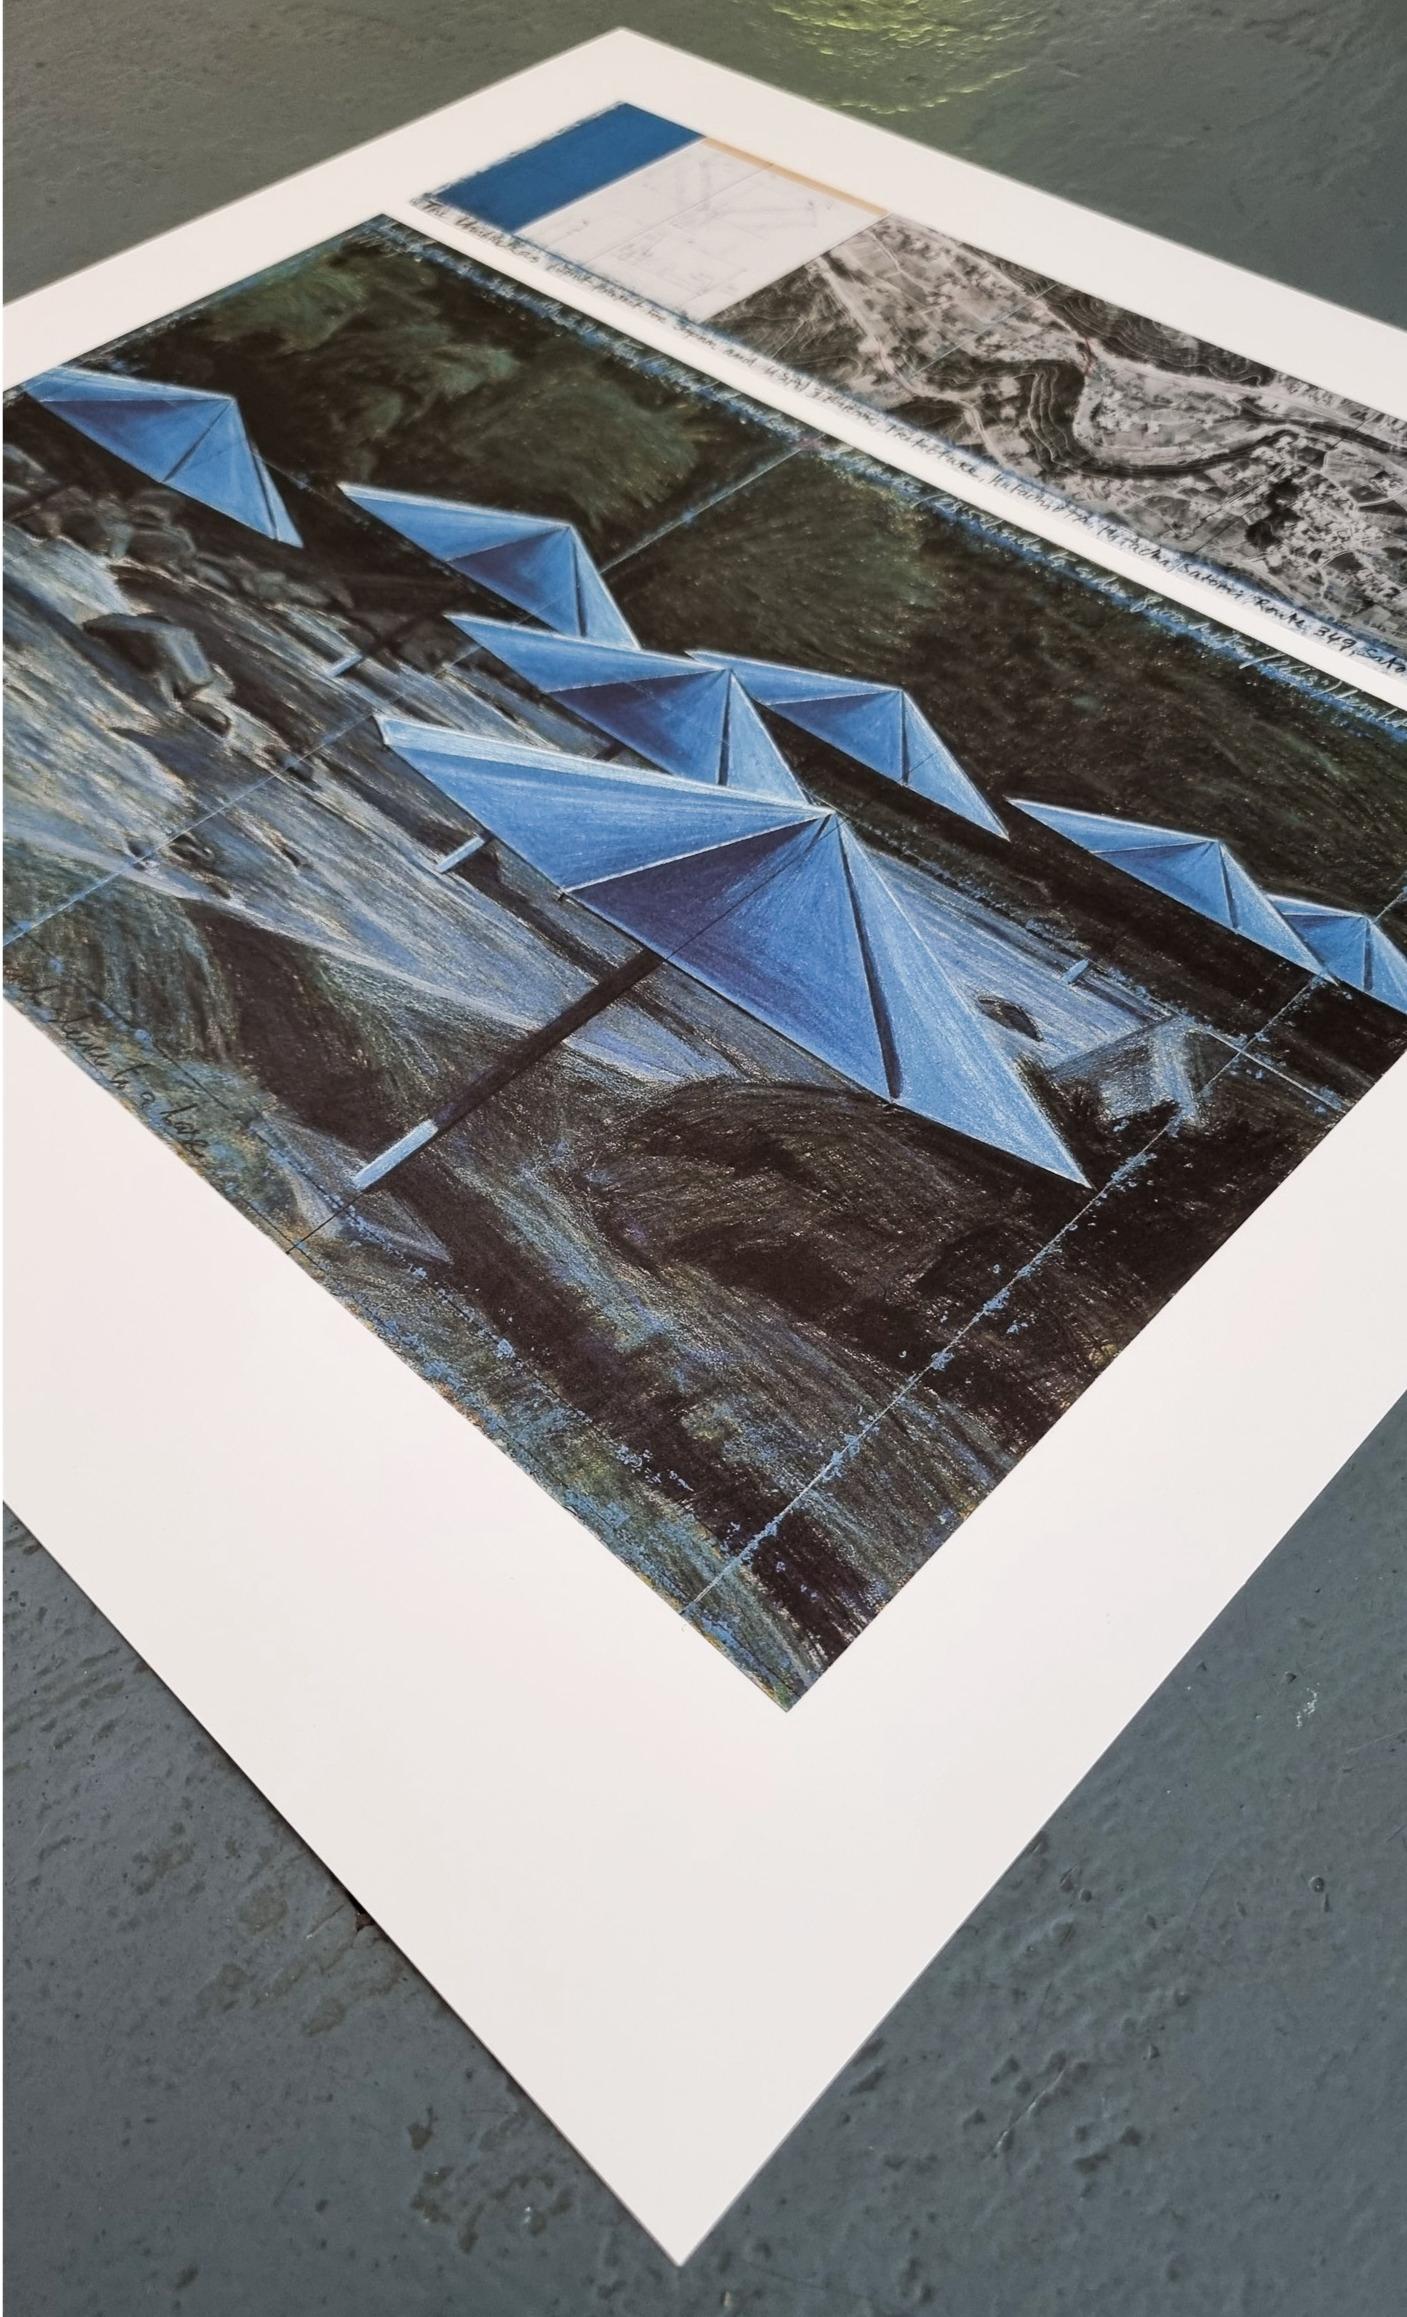 The Umbrellas (Blue) (ENCADRÉ - NOIR OU BLANC - AU CHOIX - LIVRAISON GRATUITE AUX ÉTATS-UNIS) - Print de Christo and Jeanne-Claude